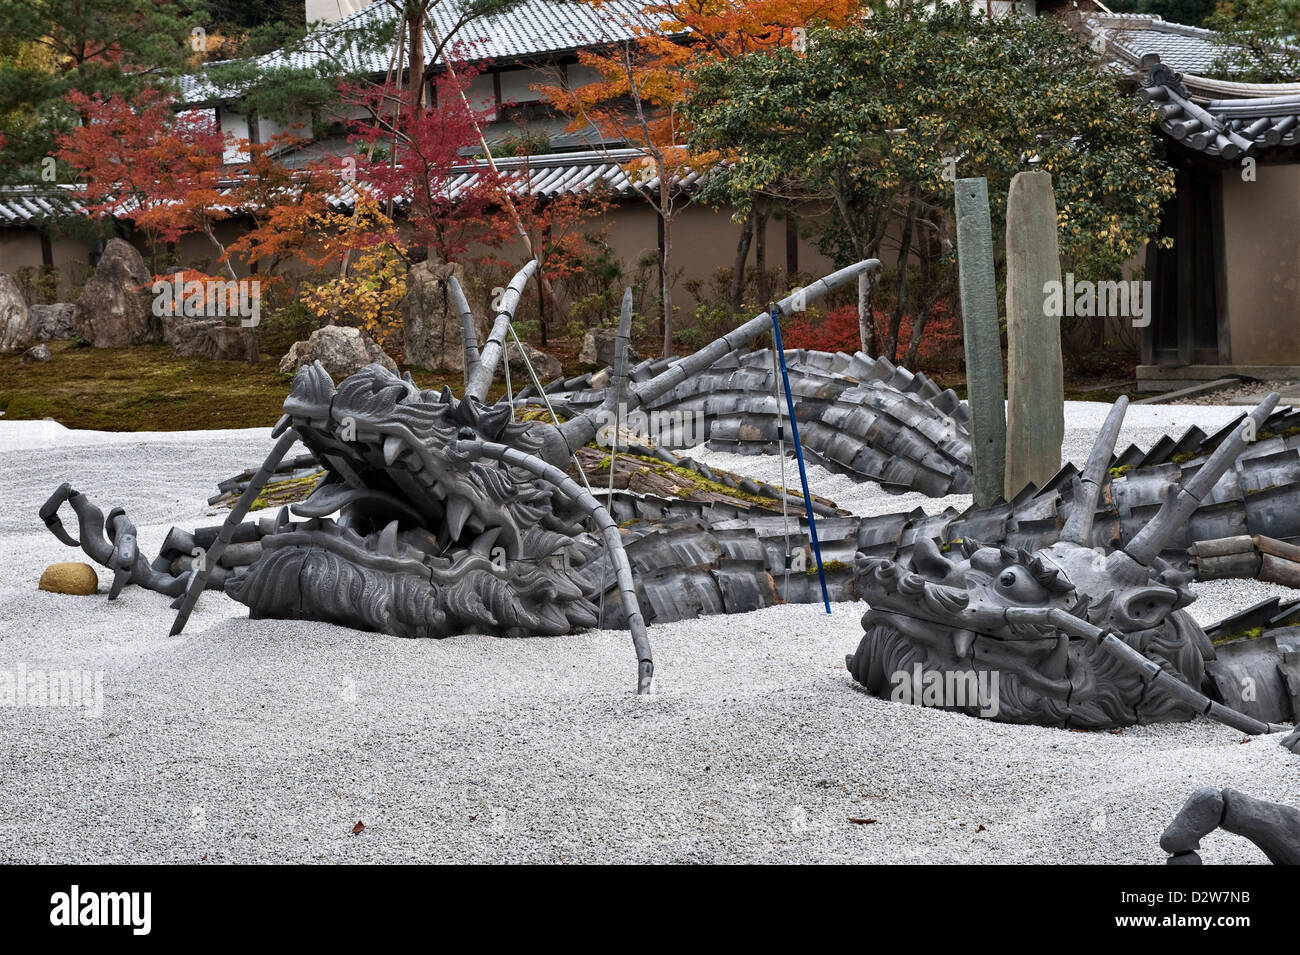 Une sculpture moderne de dragon dans le jardin de gravier sec du temple bouddhiste zen de Kodai-ji, Kyoto, Japon Banque D'Images